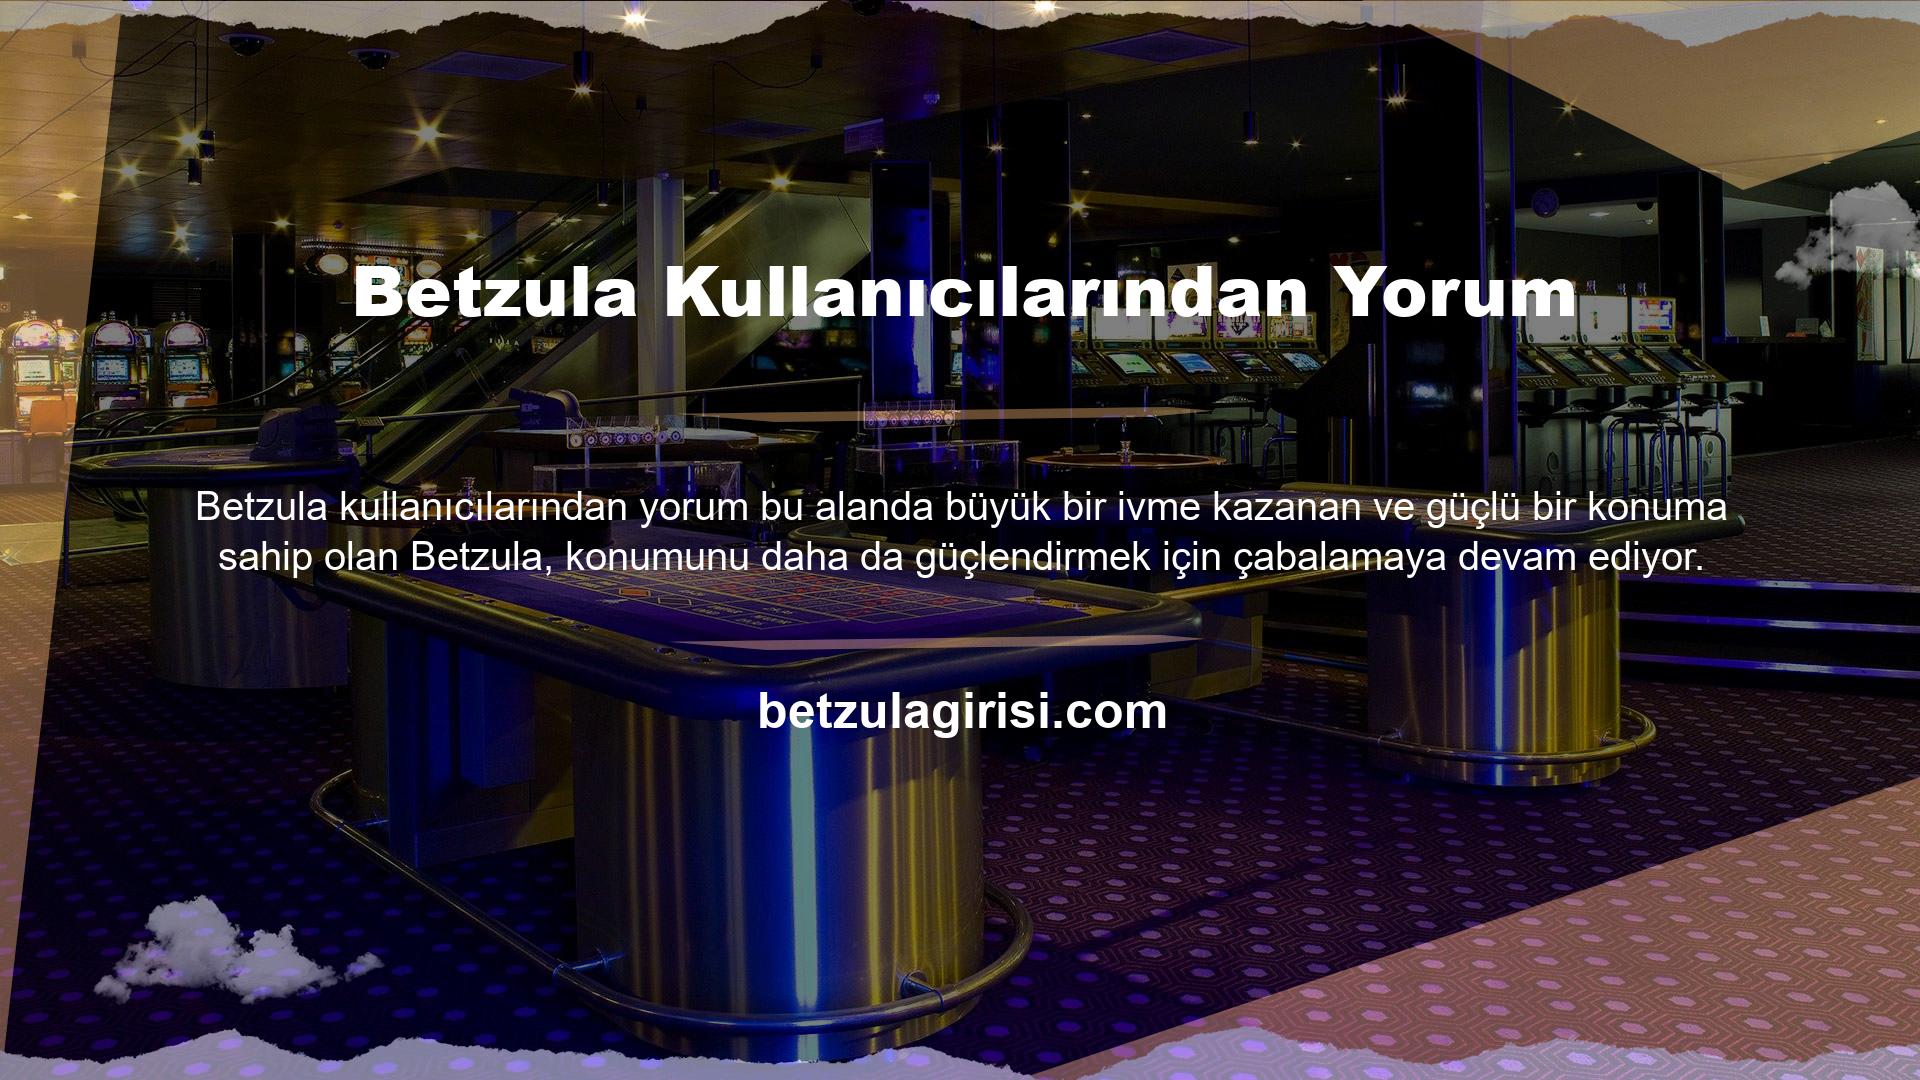 Betzula, Avrupa pazarındaki başarılı tecrübesiyle Türkiye pazarına girdikten sonra hızlı bir giriş yaparak kullanıcı yorumlarını ve şikâyetlerini iletmeyi ve sahadaki tüm rakiplerin dikkatini çekmeyi başardı